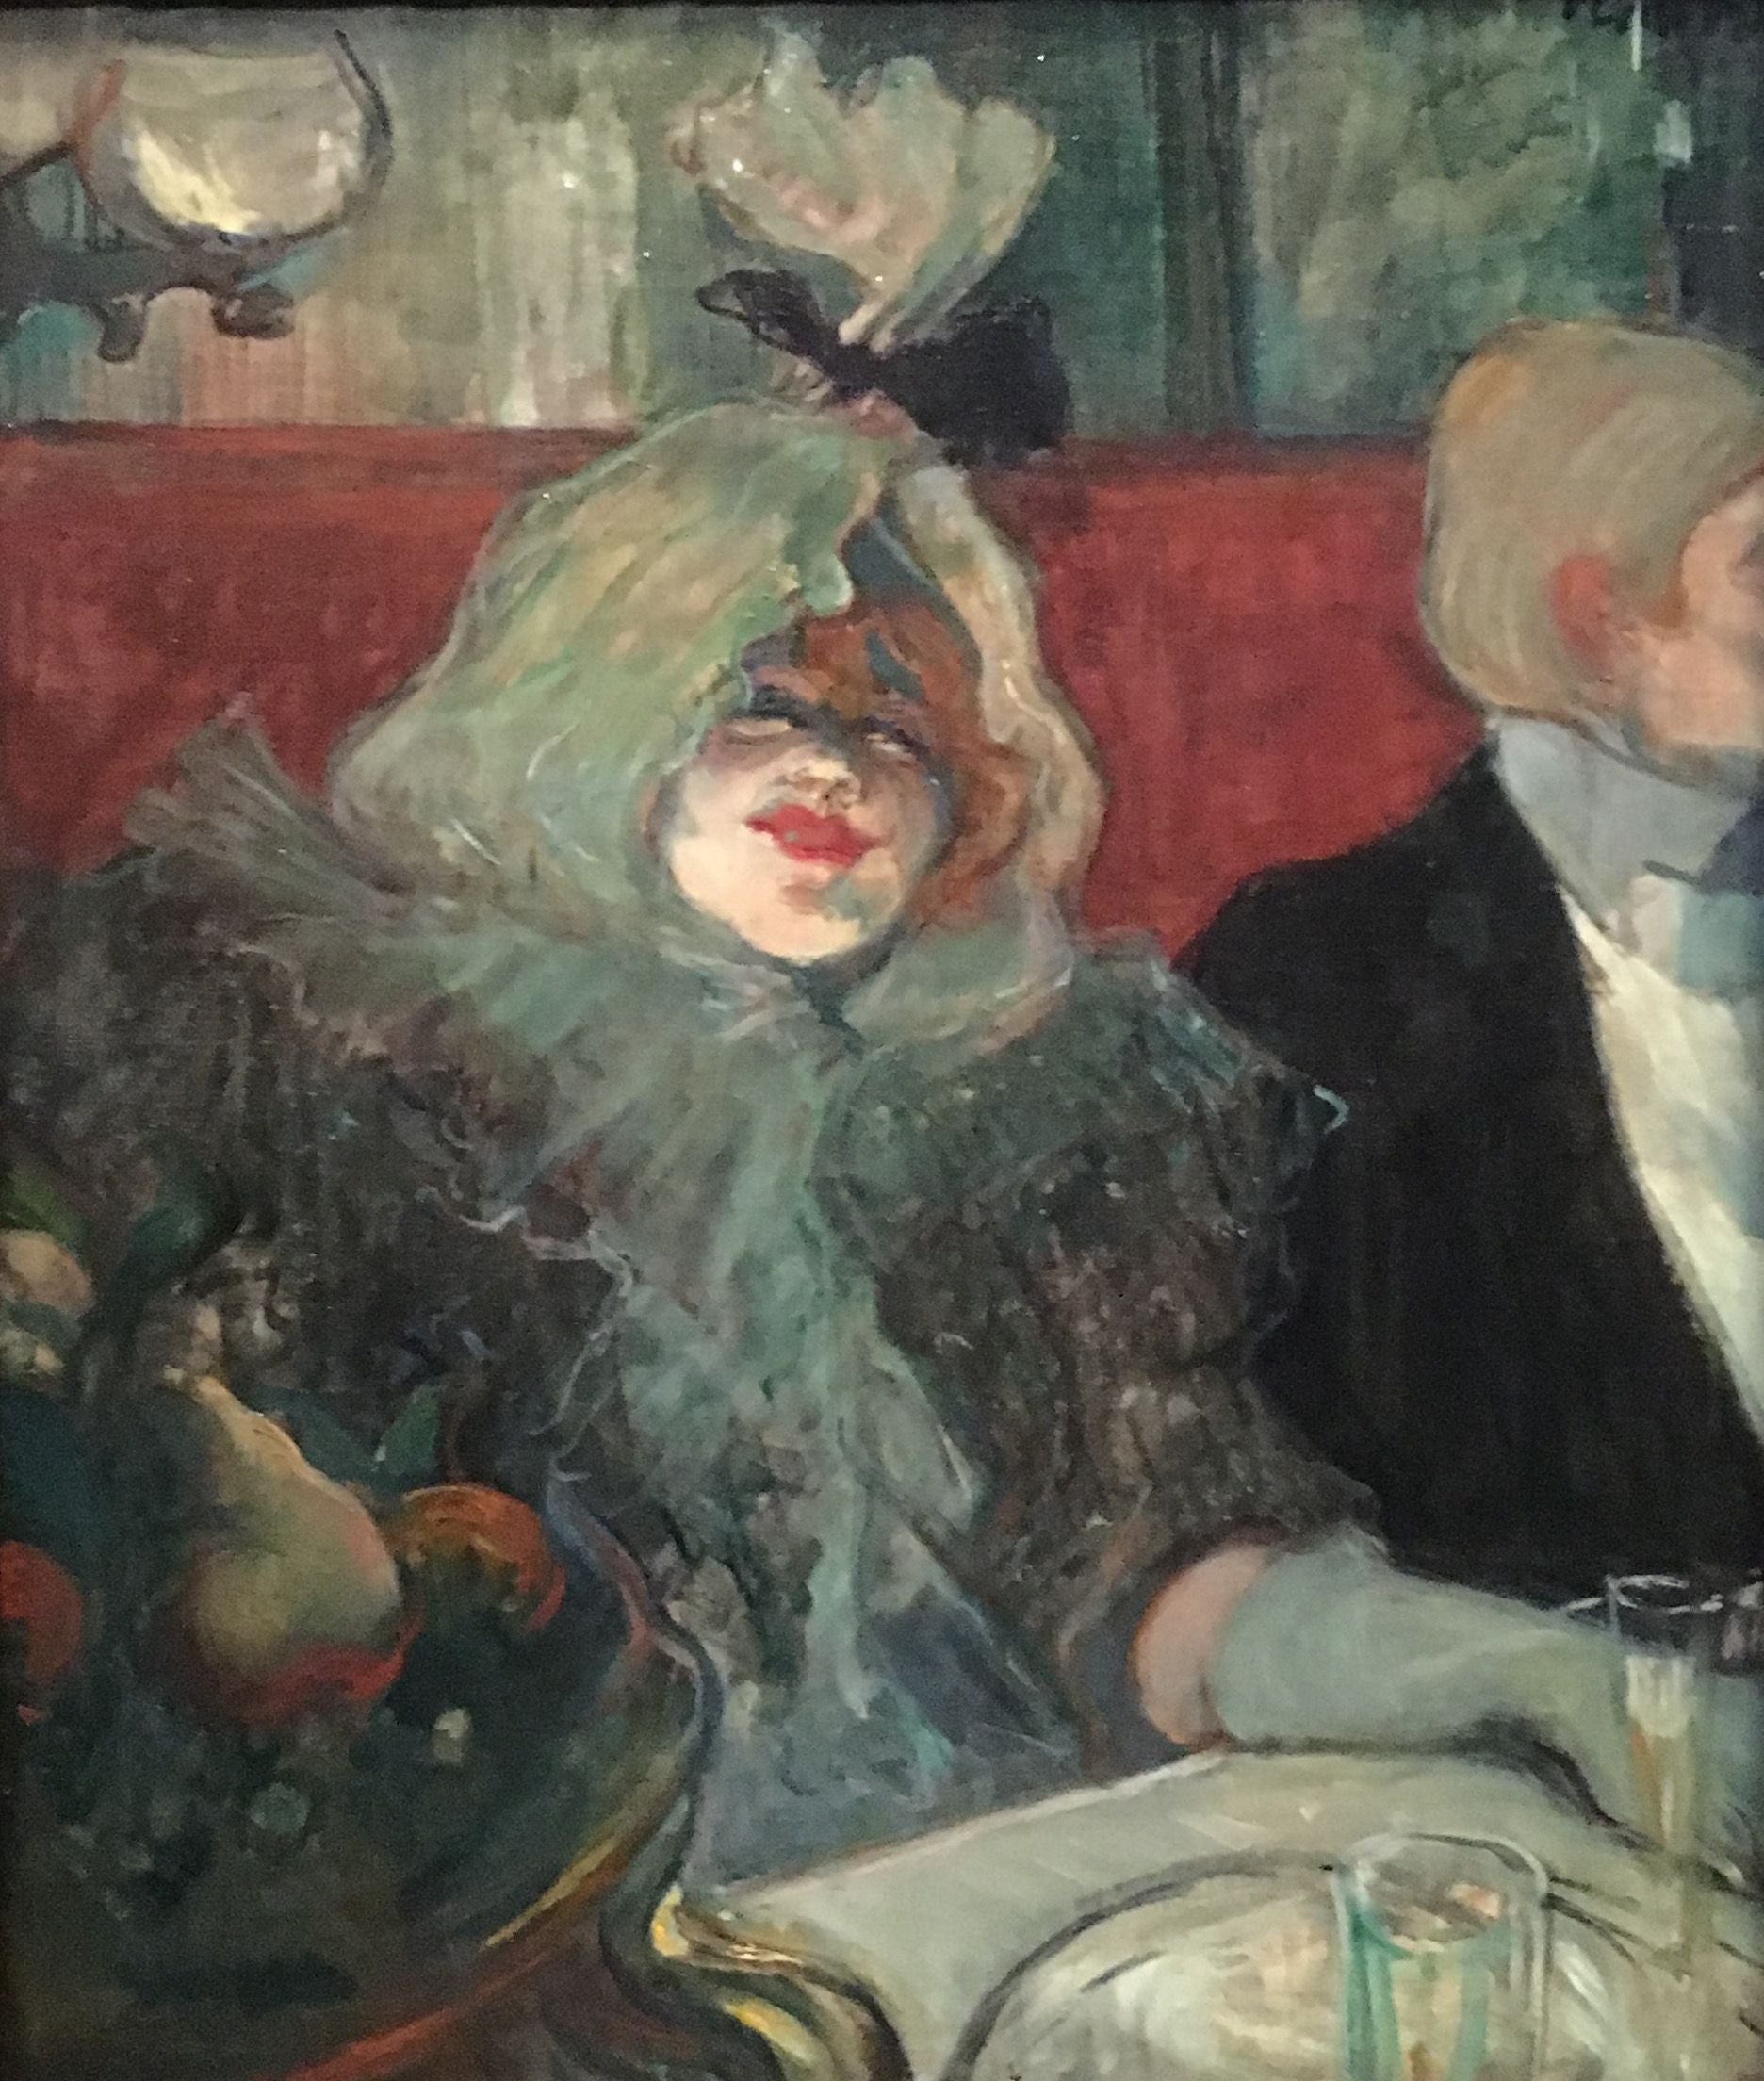 En cabinet particulier - Toulouse Lautrec